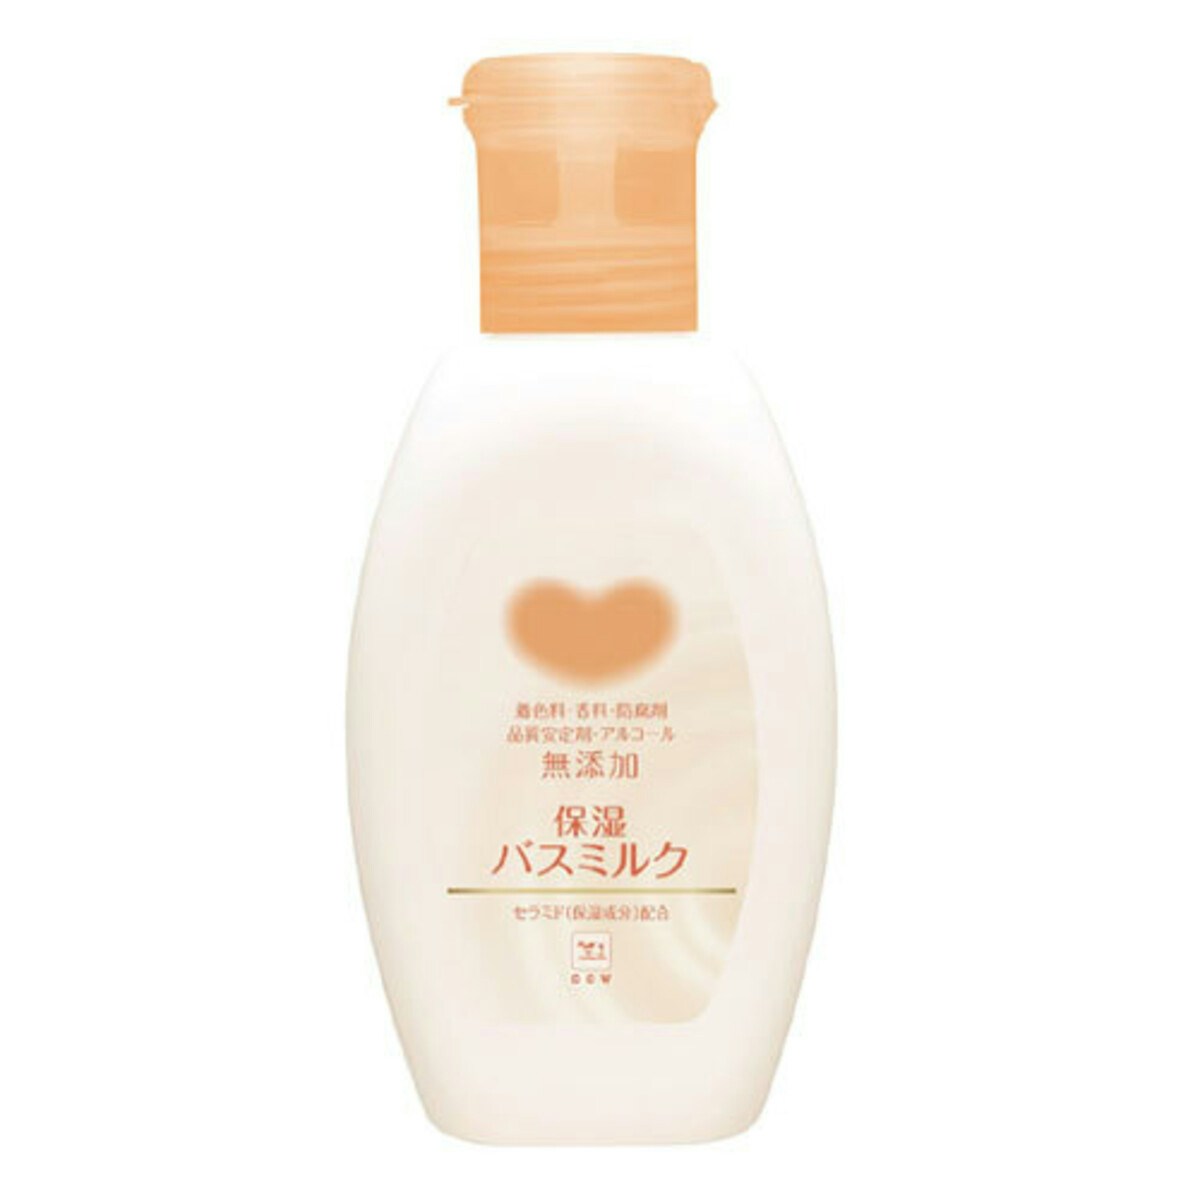 牛乳石鹸(せっけん) カウブランド 無添加保湿 バスミルク 560ml